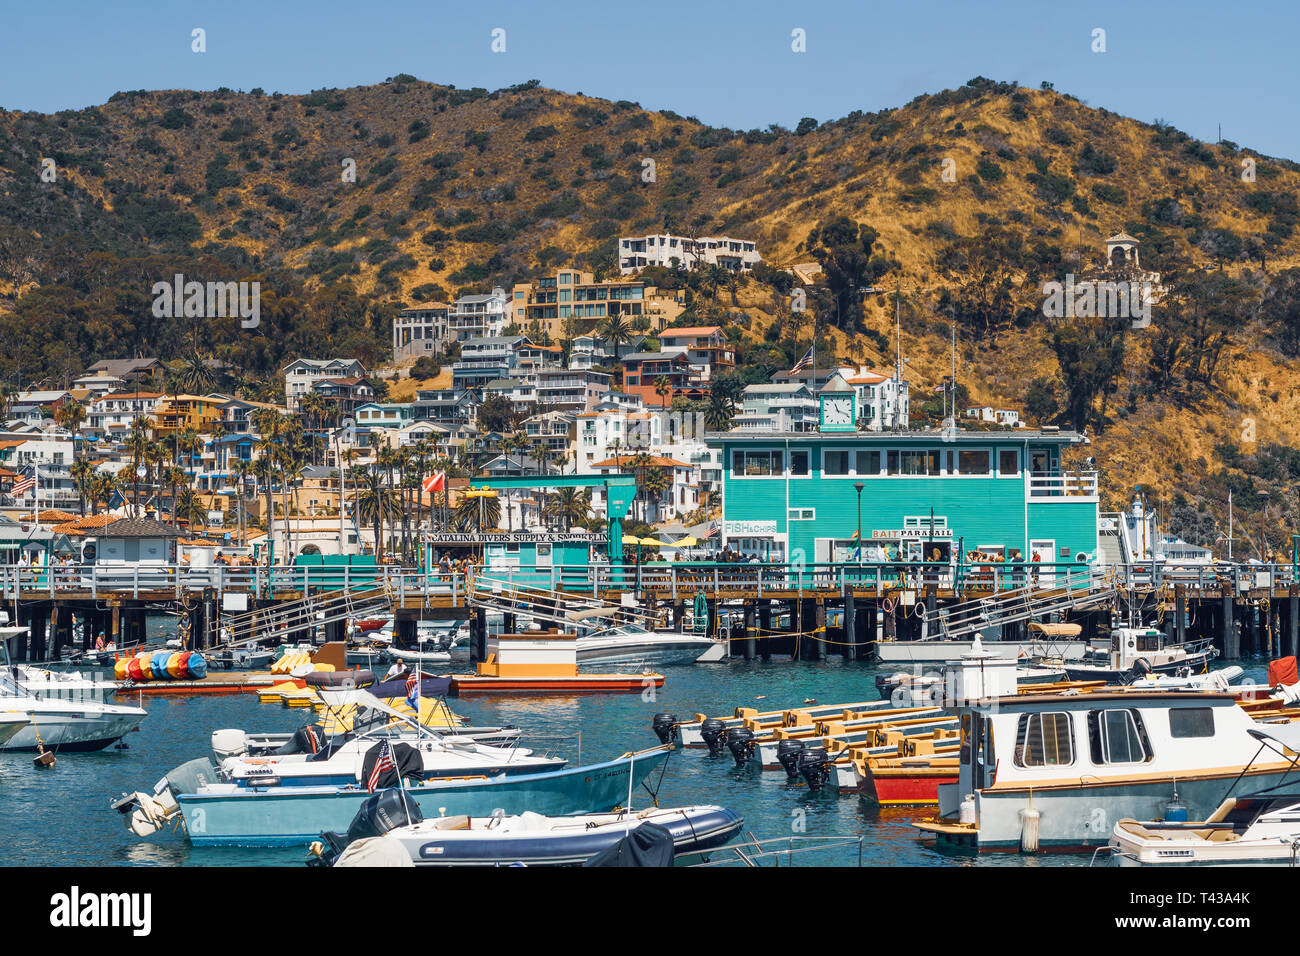 La meta turistica più visitata sull isola Catalina è la città di Avalon. Giugno 29, 2017 Foto Stock